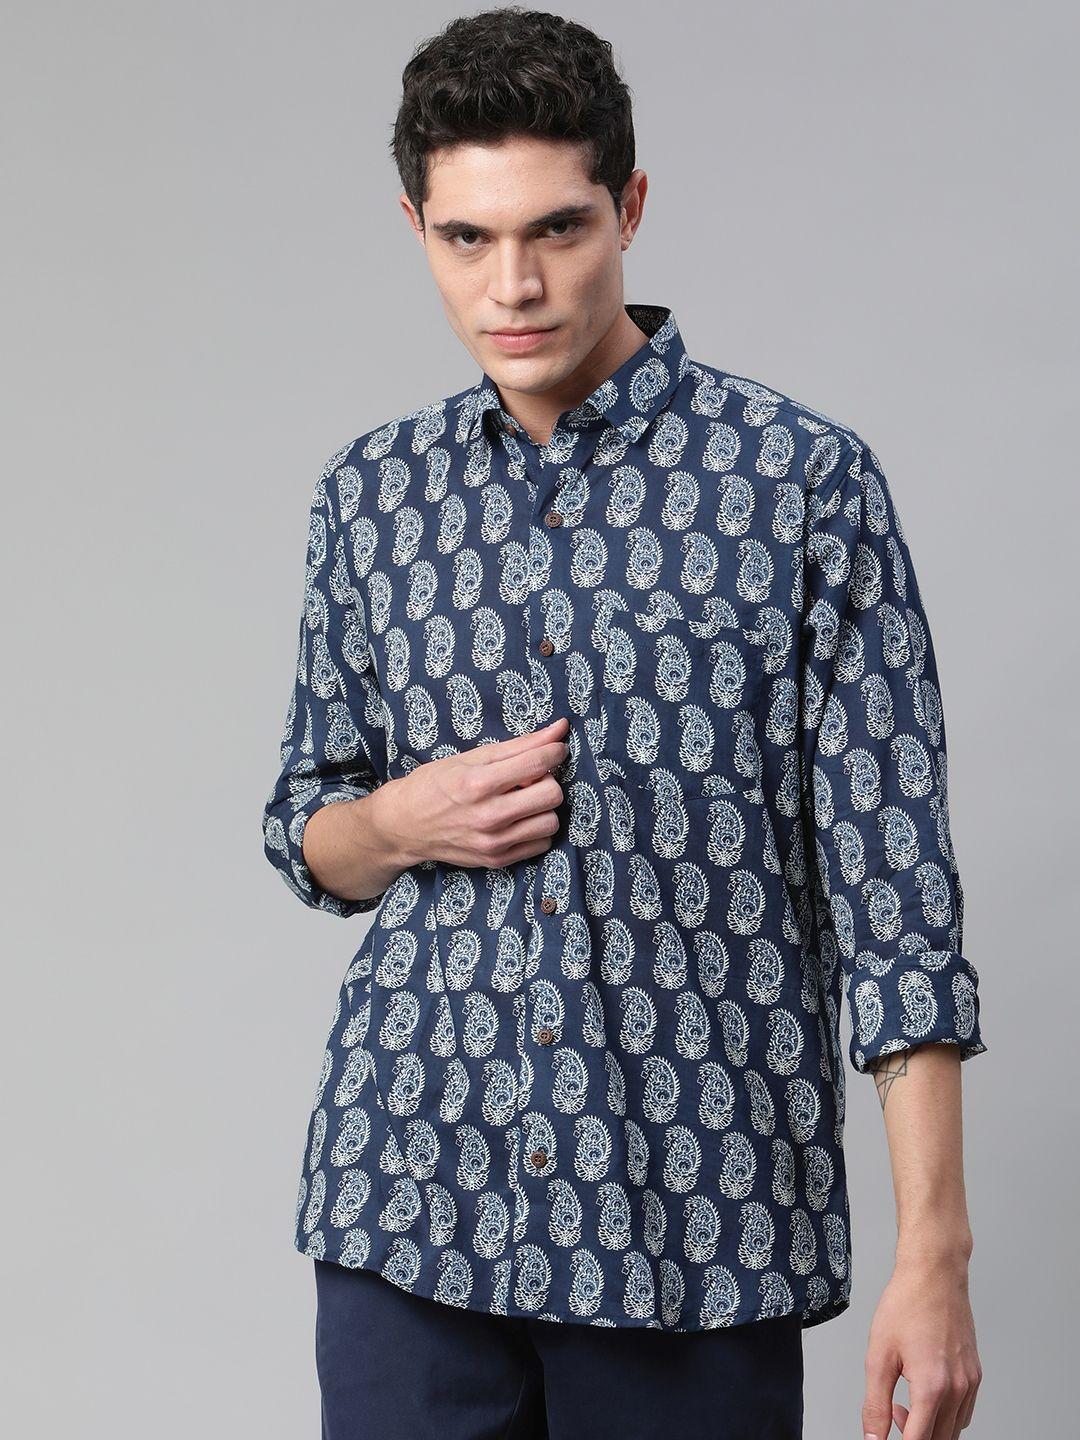 millennial men blue comfort printed casual shirt